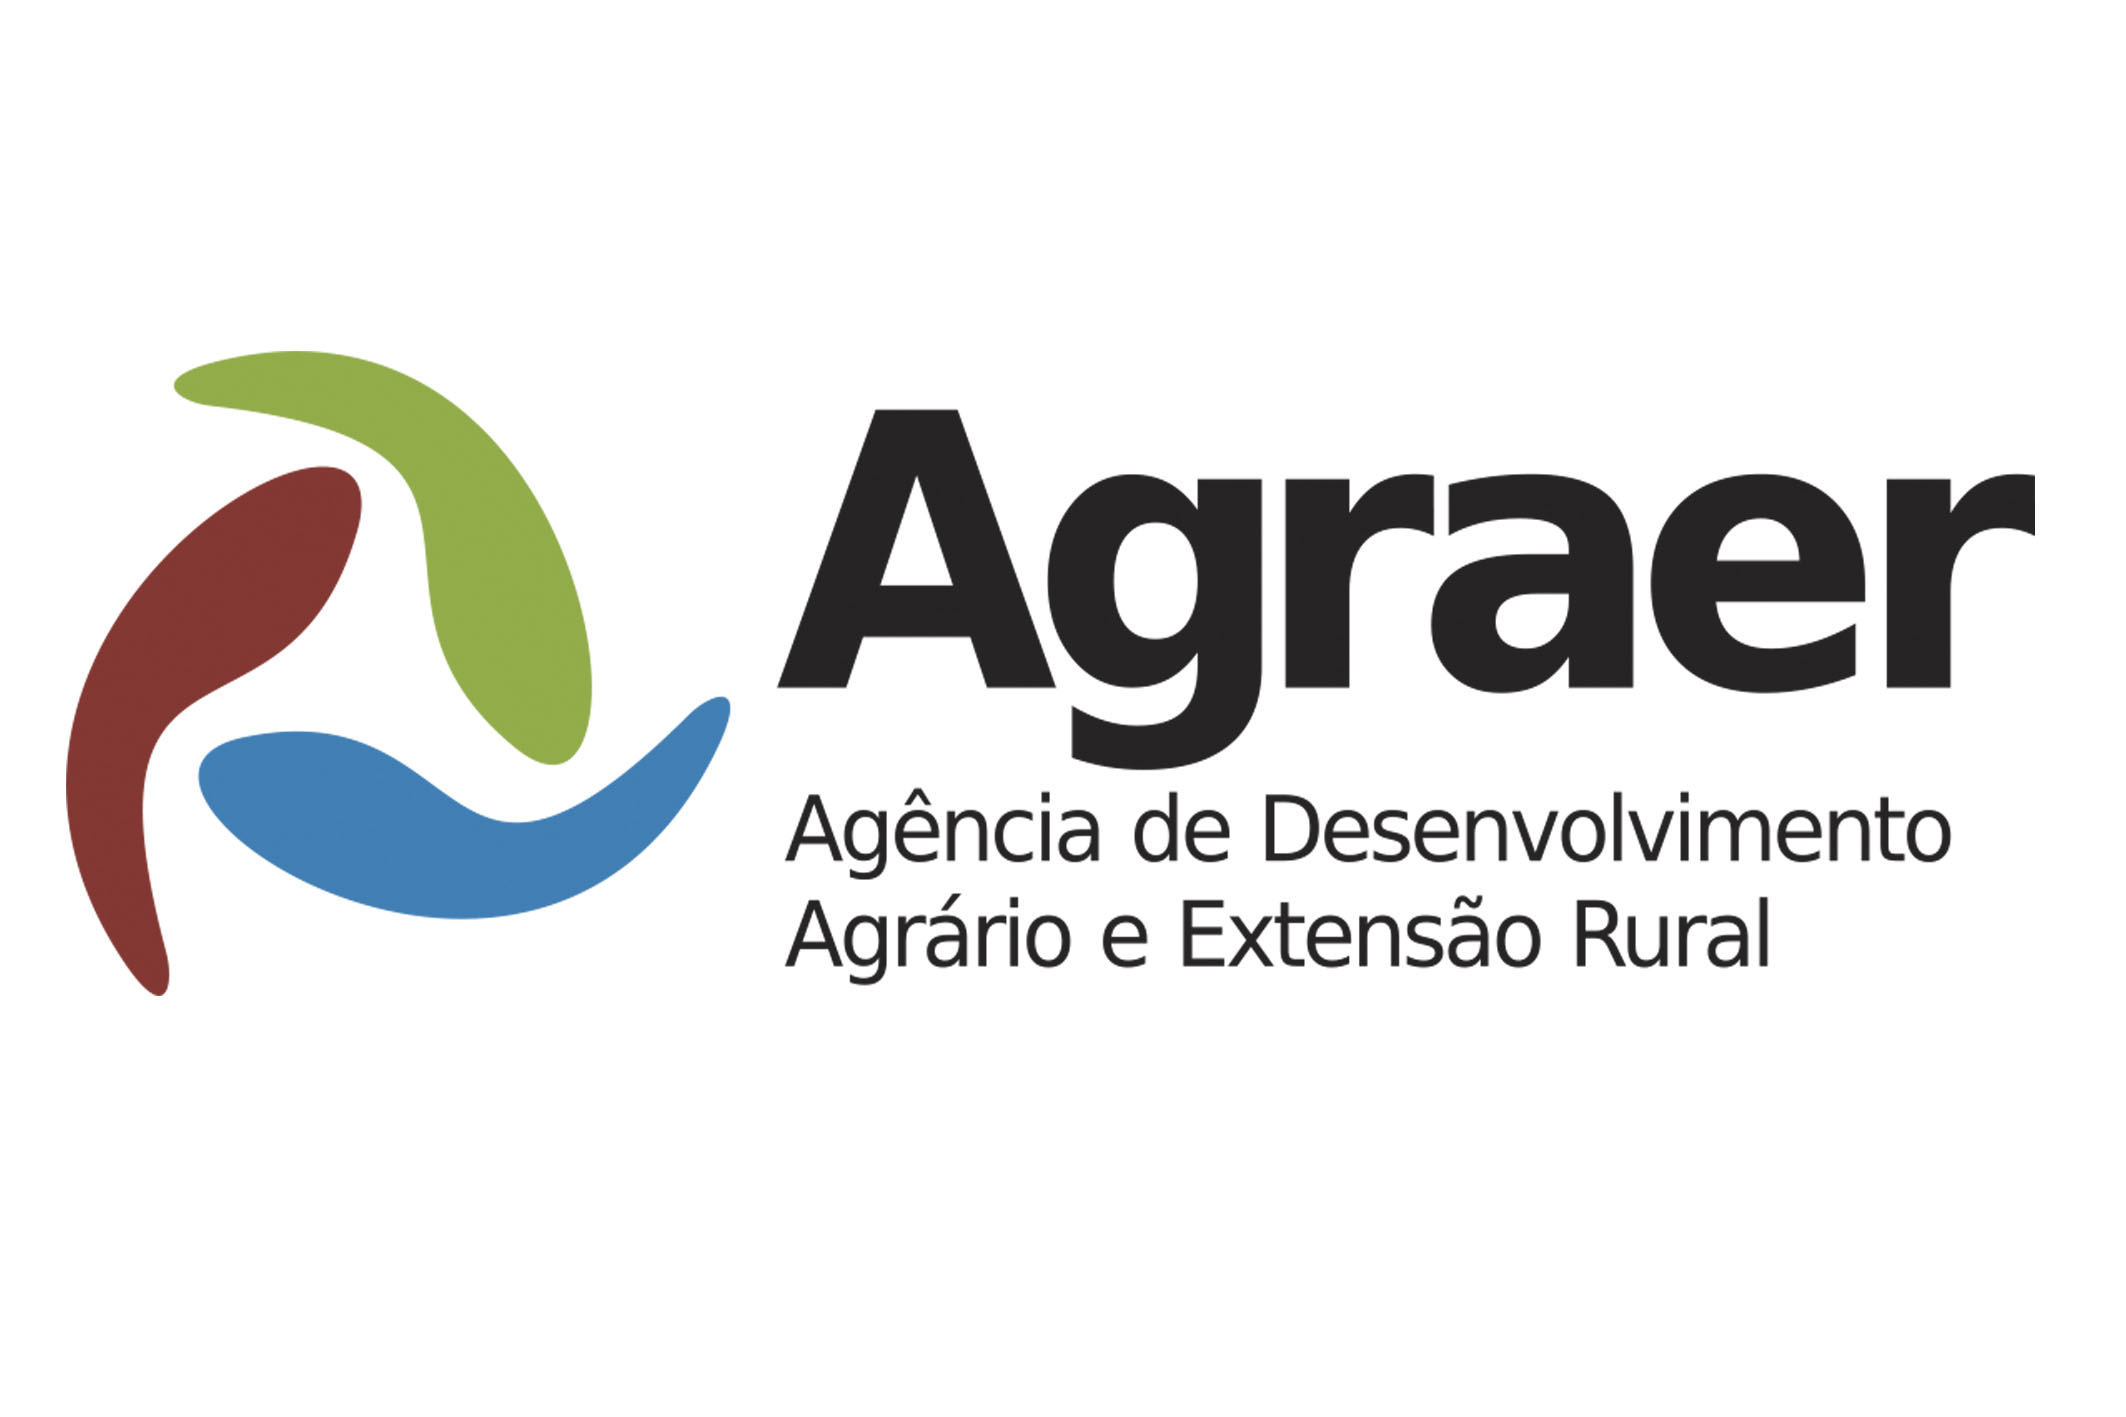 Agência de Desenvolvimento Agrário e Extensão Rural